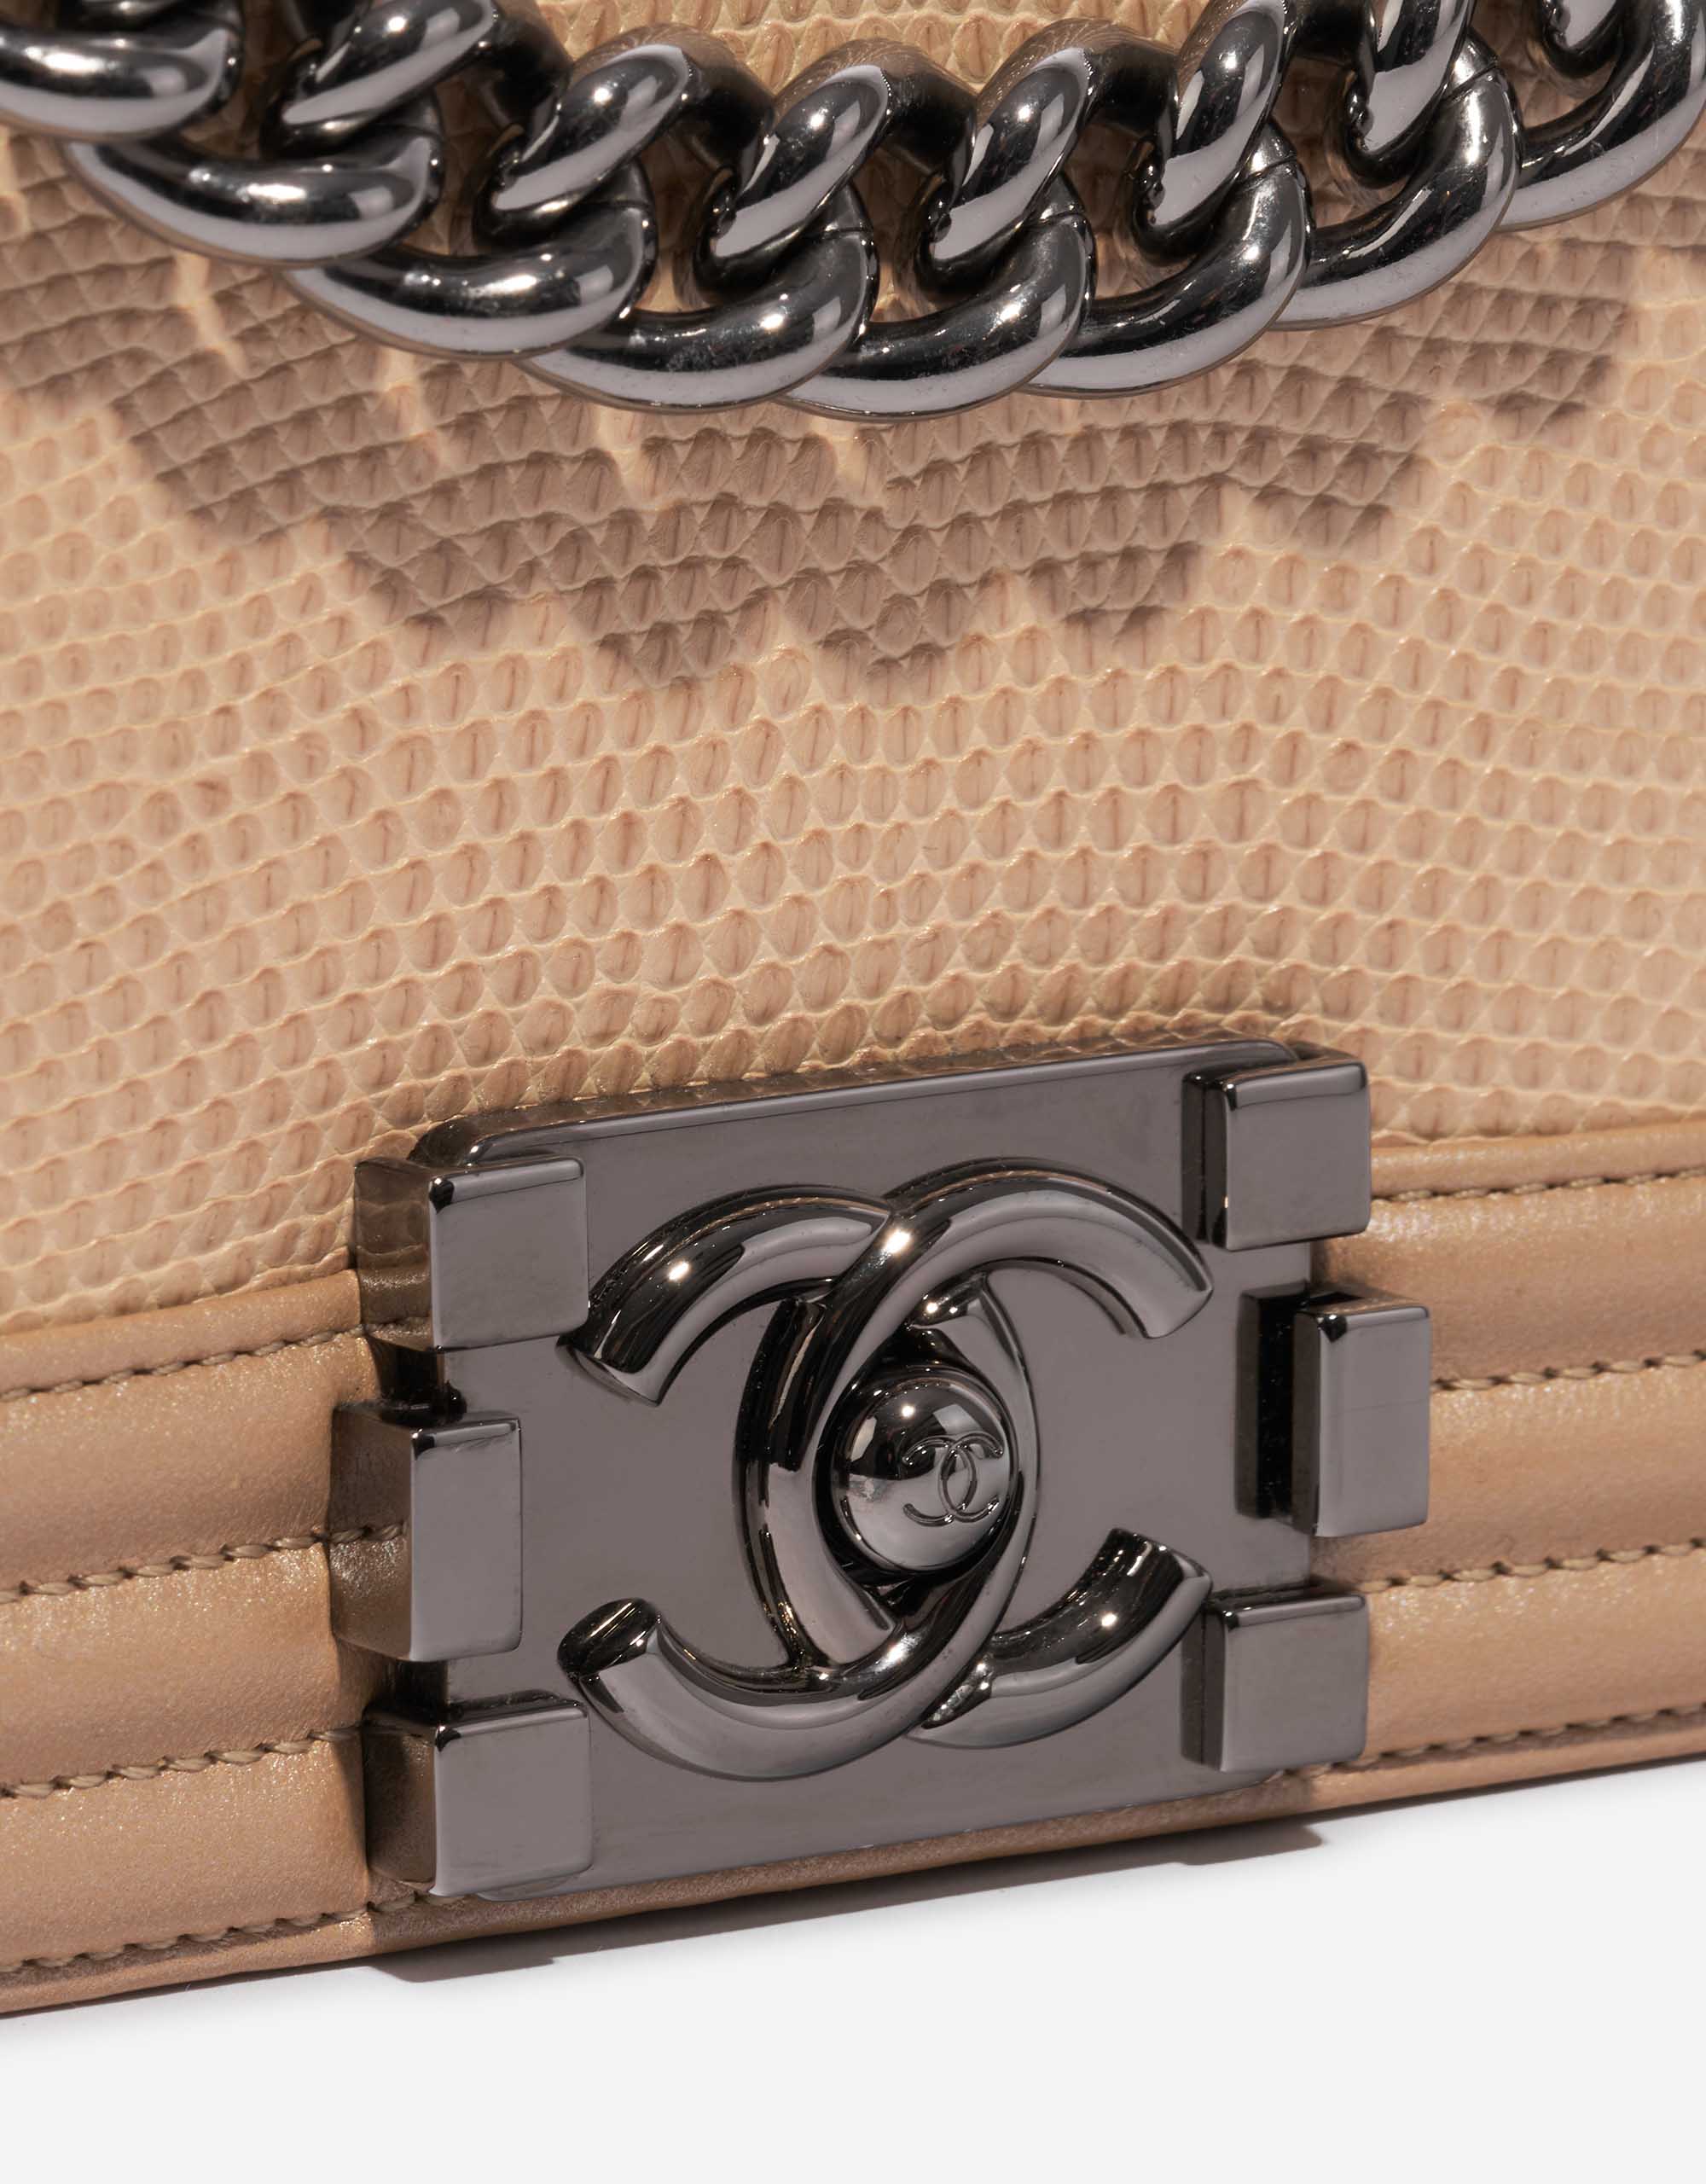 Gebrauchte Chanel Tasche Boy Old Medium Lizard Niloticus / Lammleder Gold / Natural Beige, Gold Closing System | Verkaufen Sie Ihre Designer-Tasche auf Saclab.com